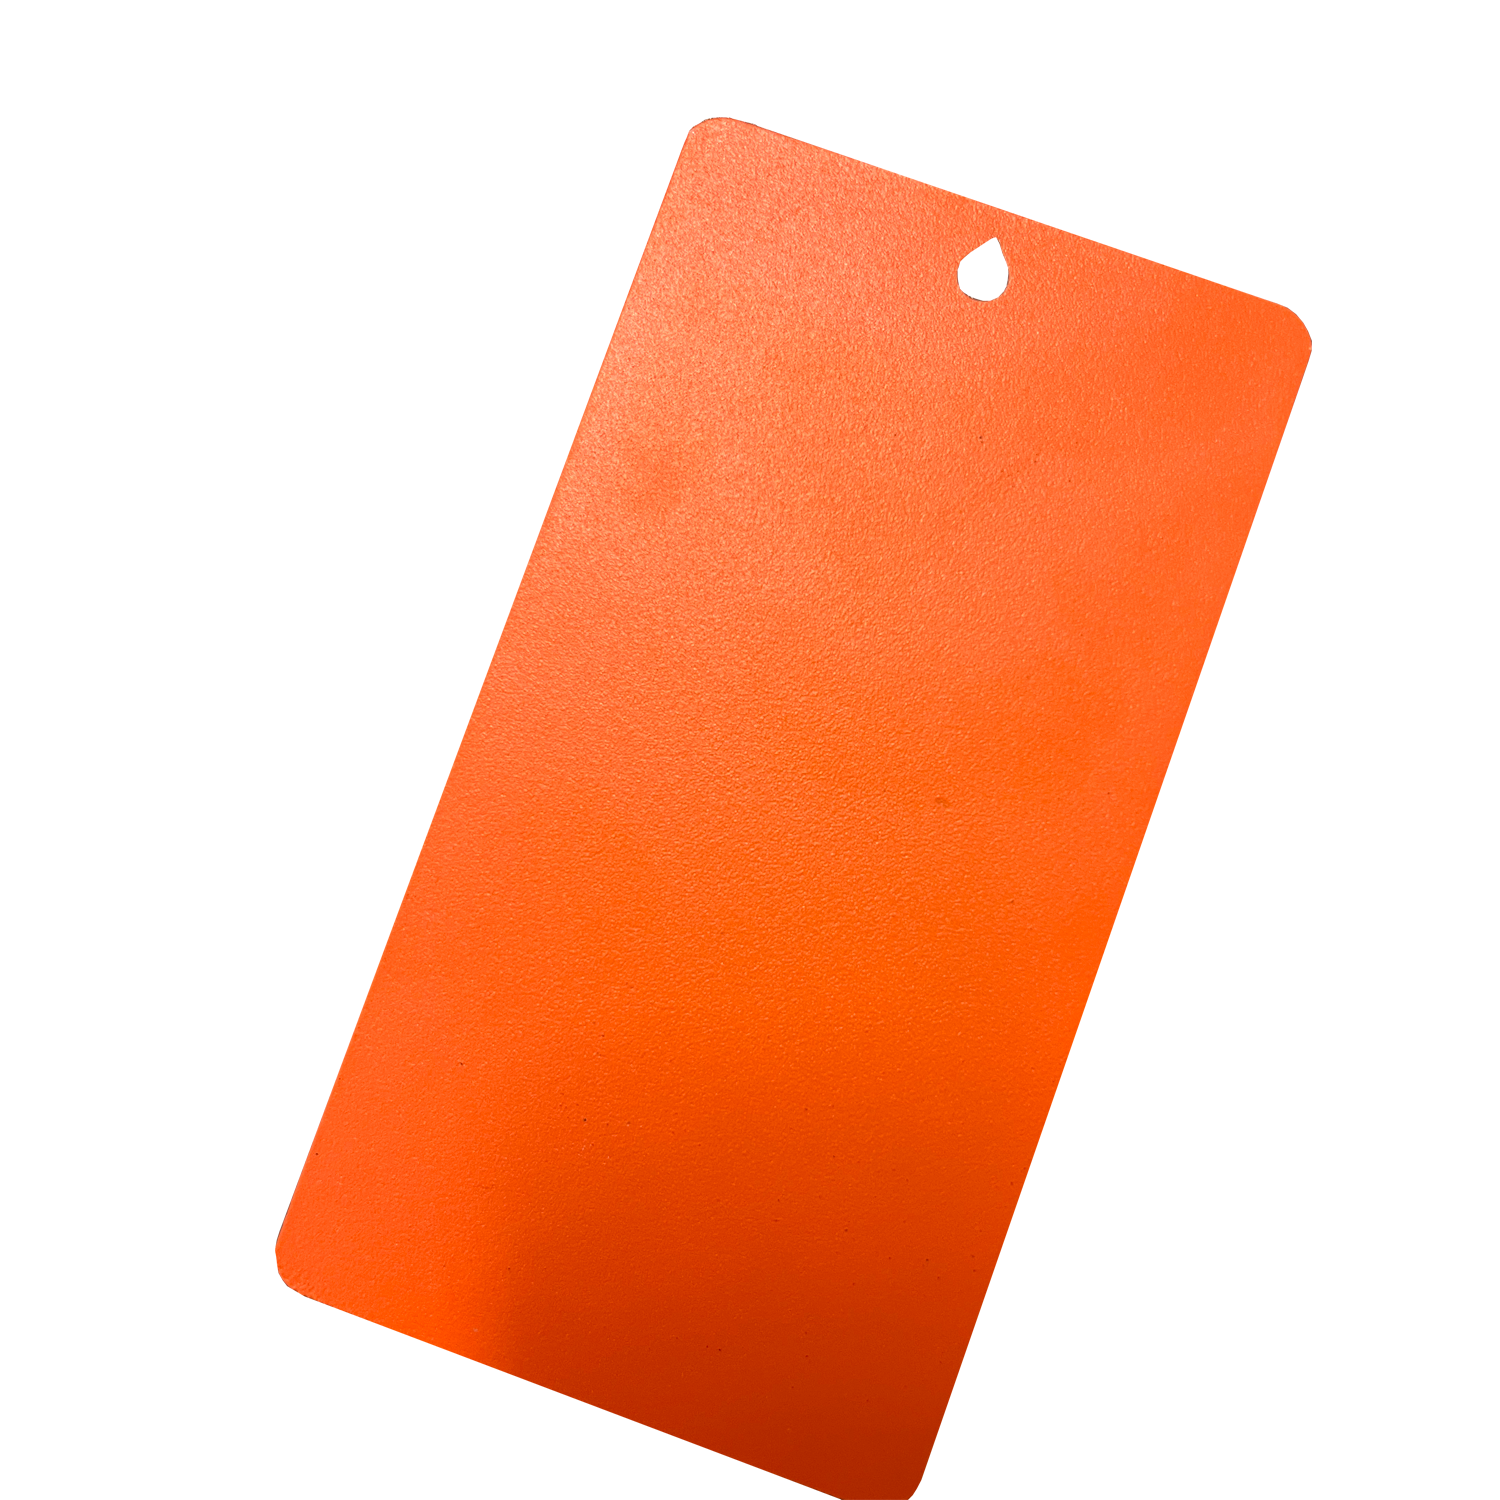 Ral 2004 Orange Texture sablée Peinture époxy polyester en poudre Pintura En Polvo pour produits métalliques